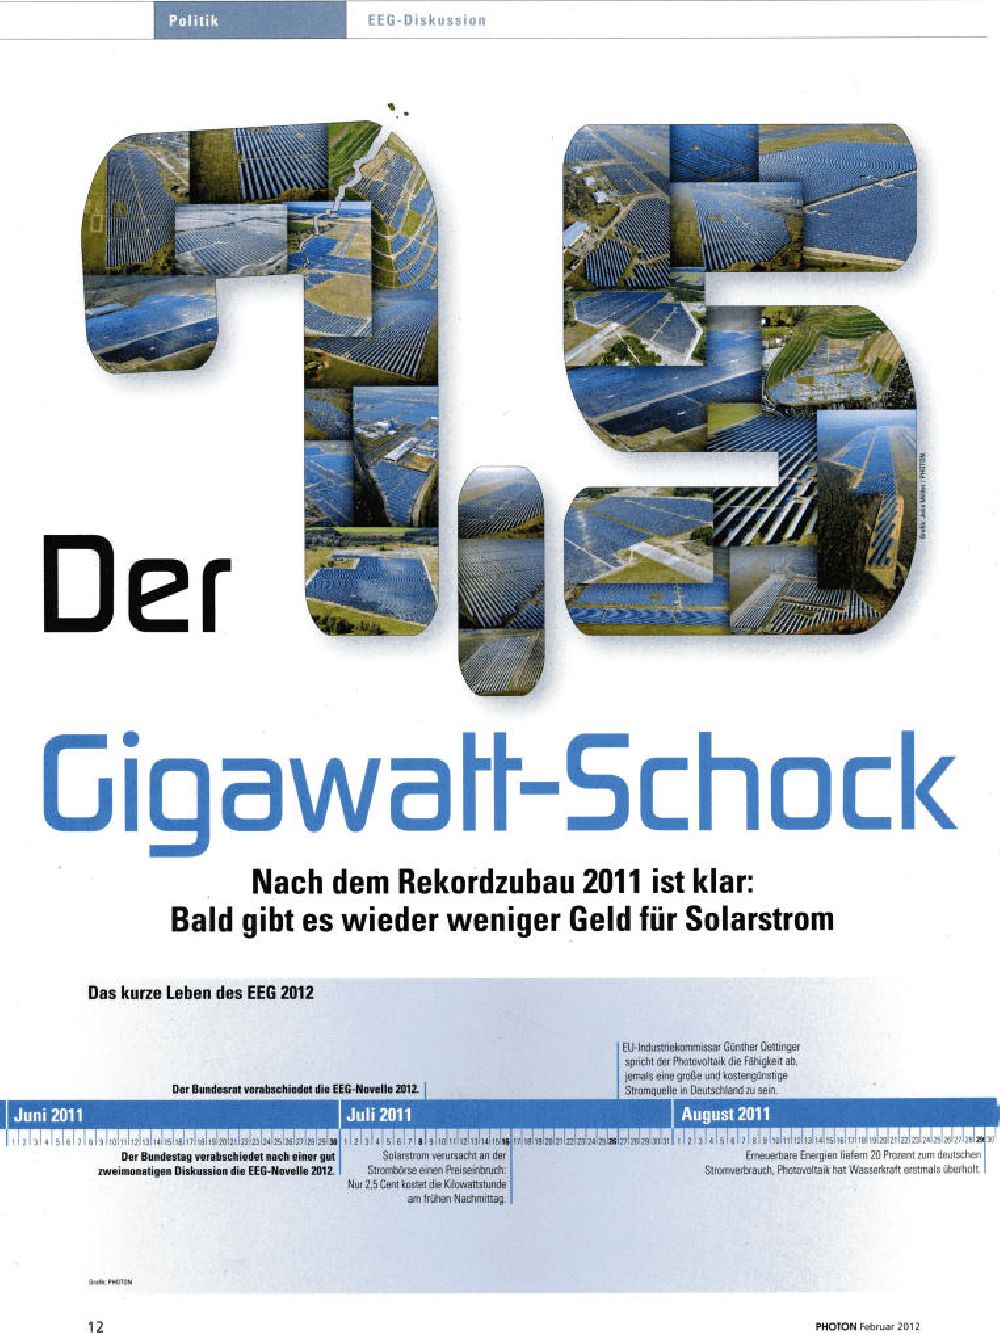 Aachen from above - Belegausschnitt der Luftbildverwendung Solarfelder / Solarkraftwerke bundesweit - Motive in Grafikverwendung PHOTON 2/2012 Seite 12 in Der 7,5 Gigawatt- Schock .